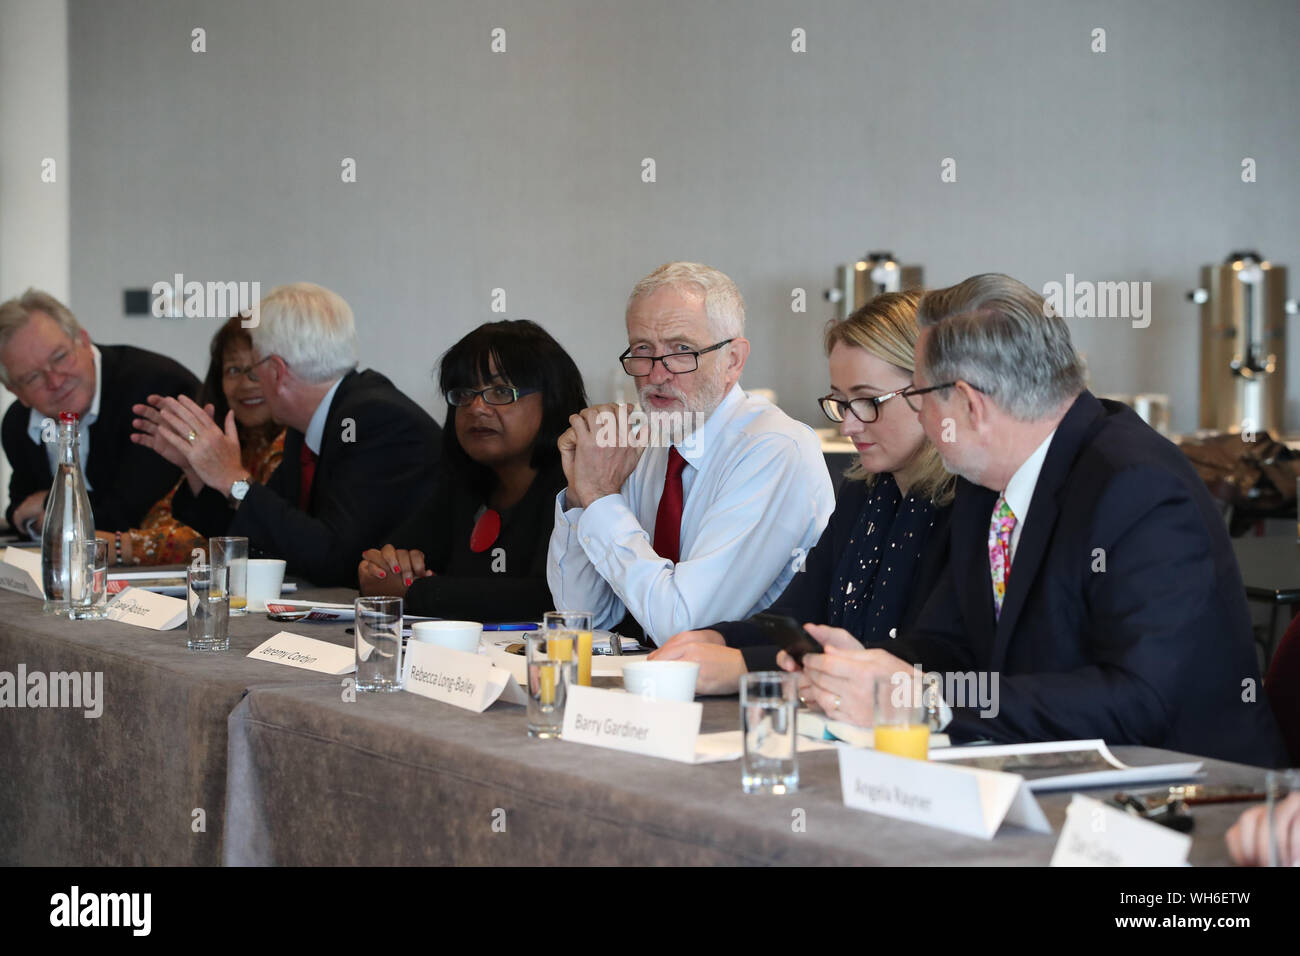 Leader du travail Jeremy Corbyn (troisième à droite) avec des membres de son cabinet fantôme dans le théâtre Lowry dans la région de Salford Quays, Manchester lors d'une réunion du cabinet fantôme. Banque D'Images